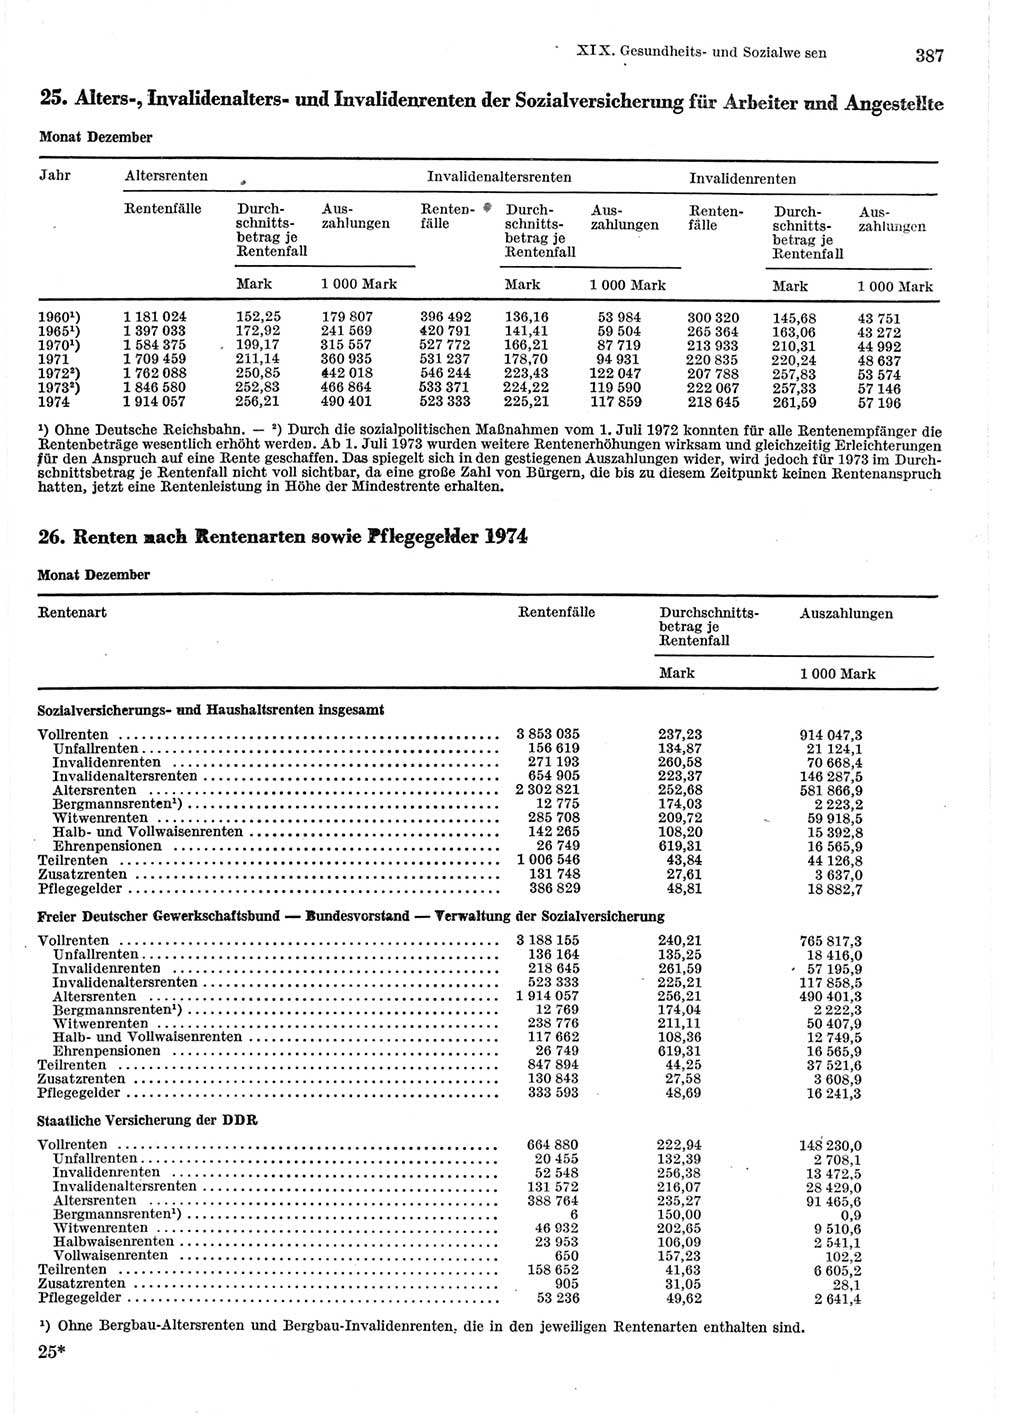 Statistisches Jahrbuch der Deutschen Demokratischen Republik (DDR) 1975, Seite 387 (Stat. Jb. DDR 1975, S. 387)